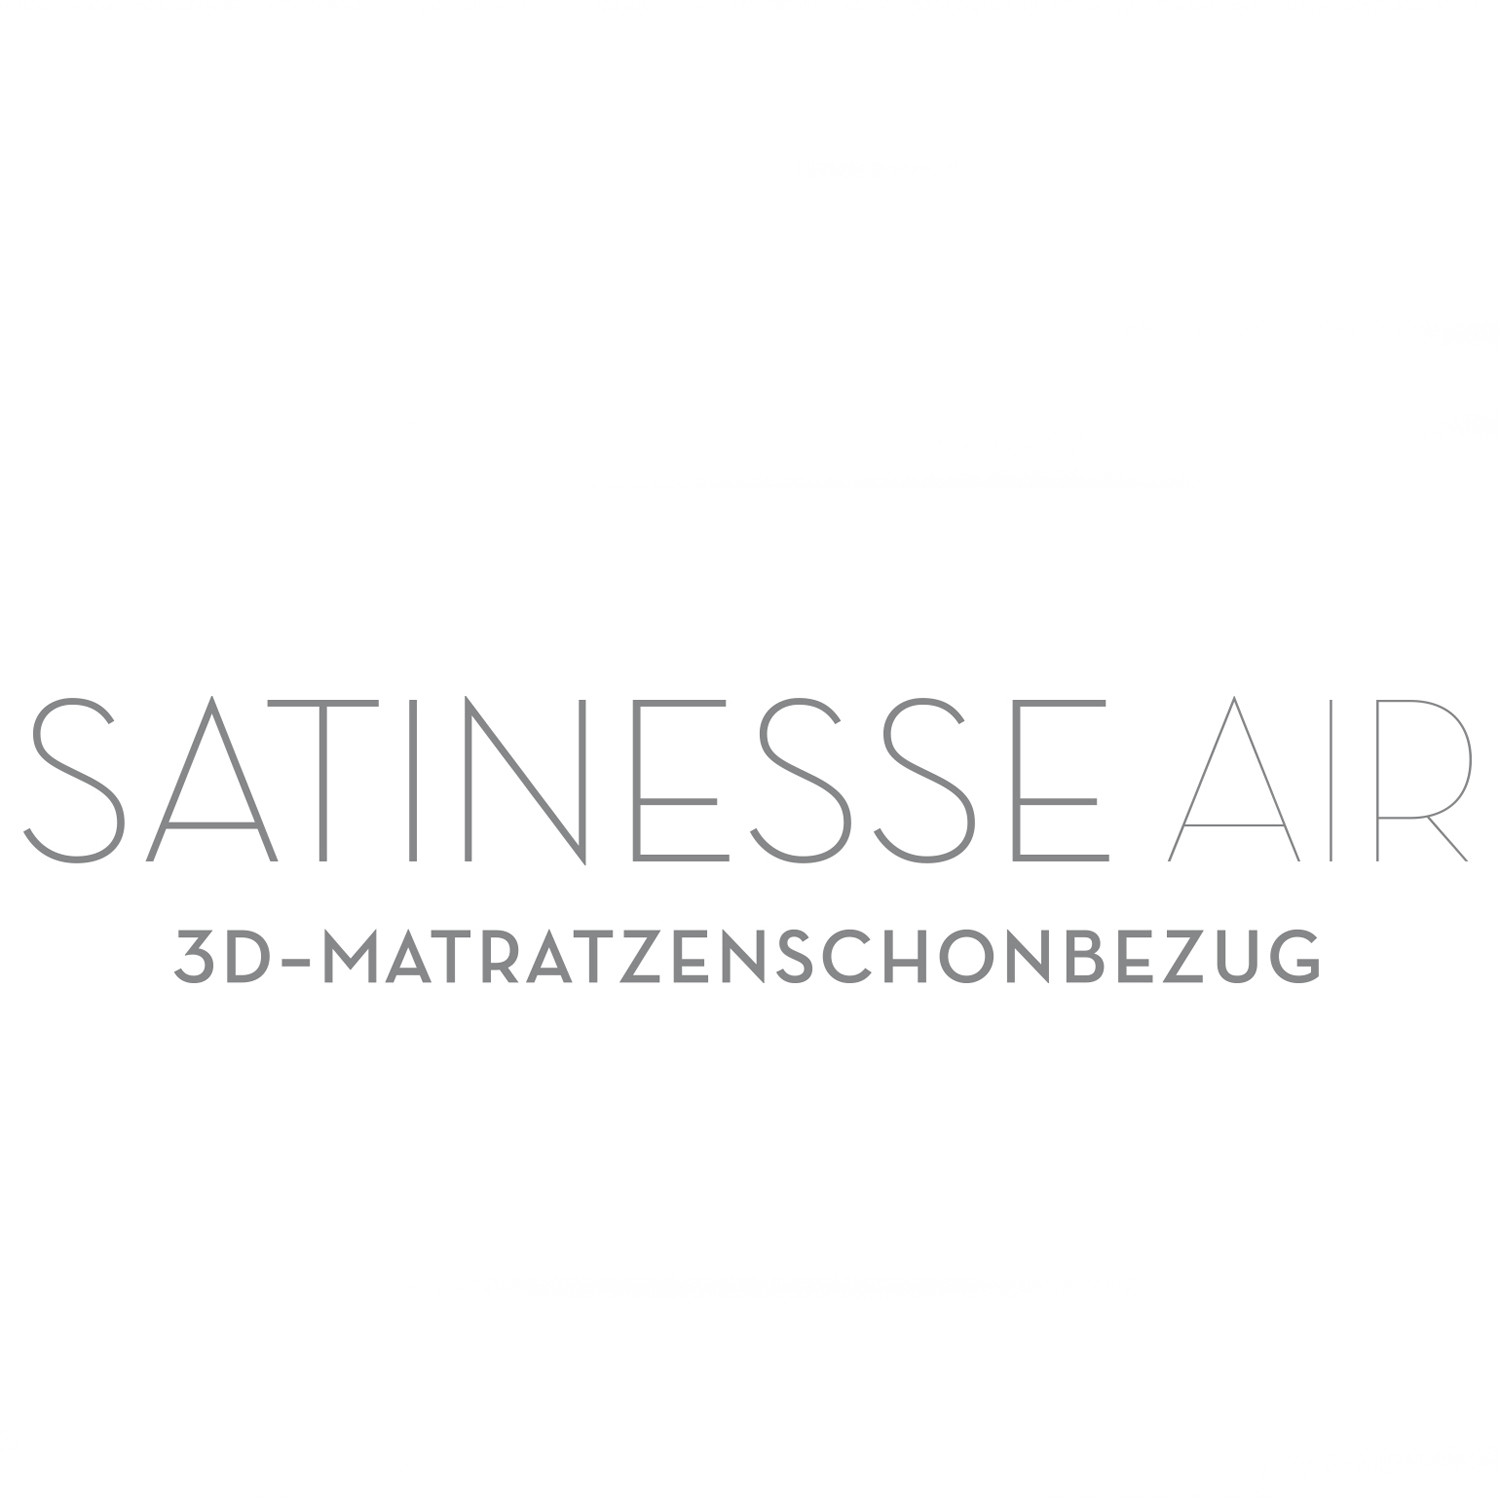 FORMESSE Matratzenschoner Satinesse Air Silver wollweiß 120-130x200cm